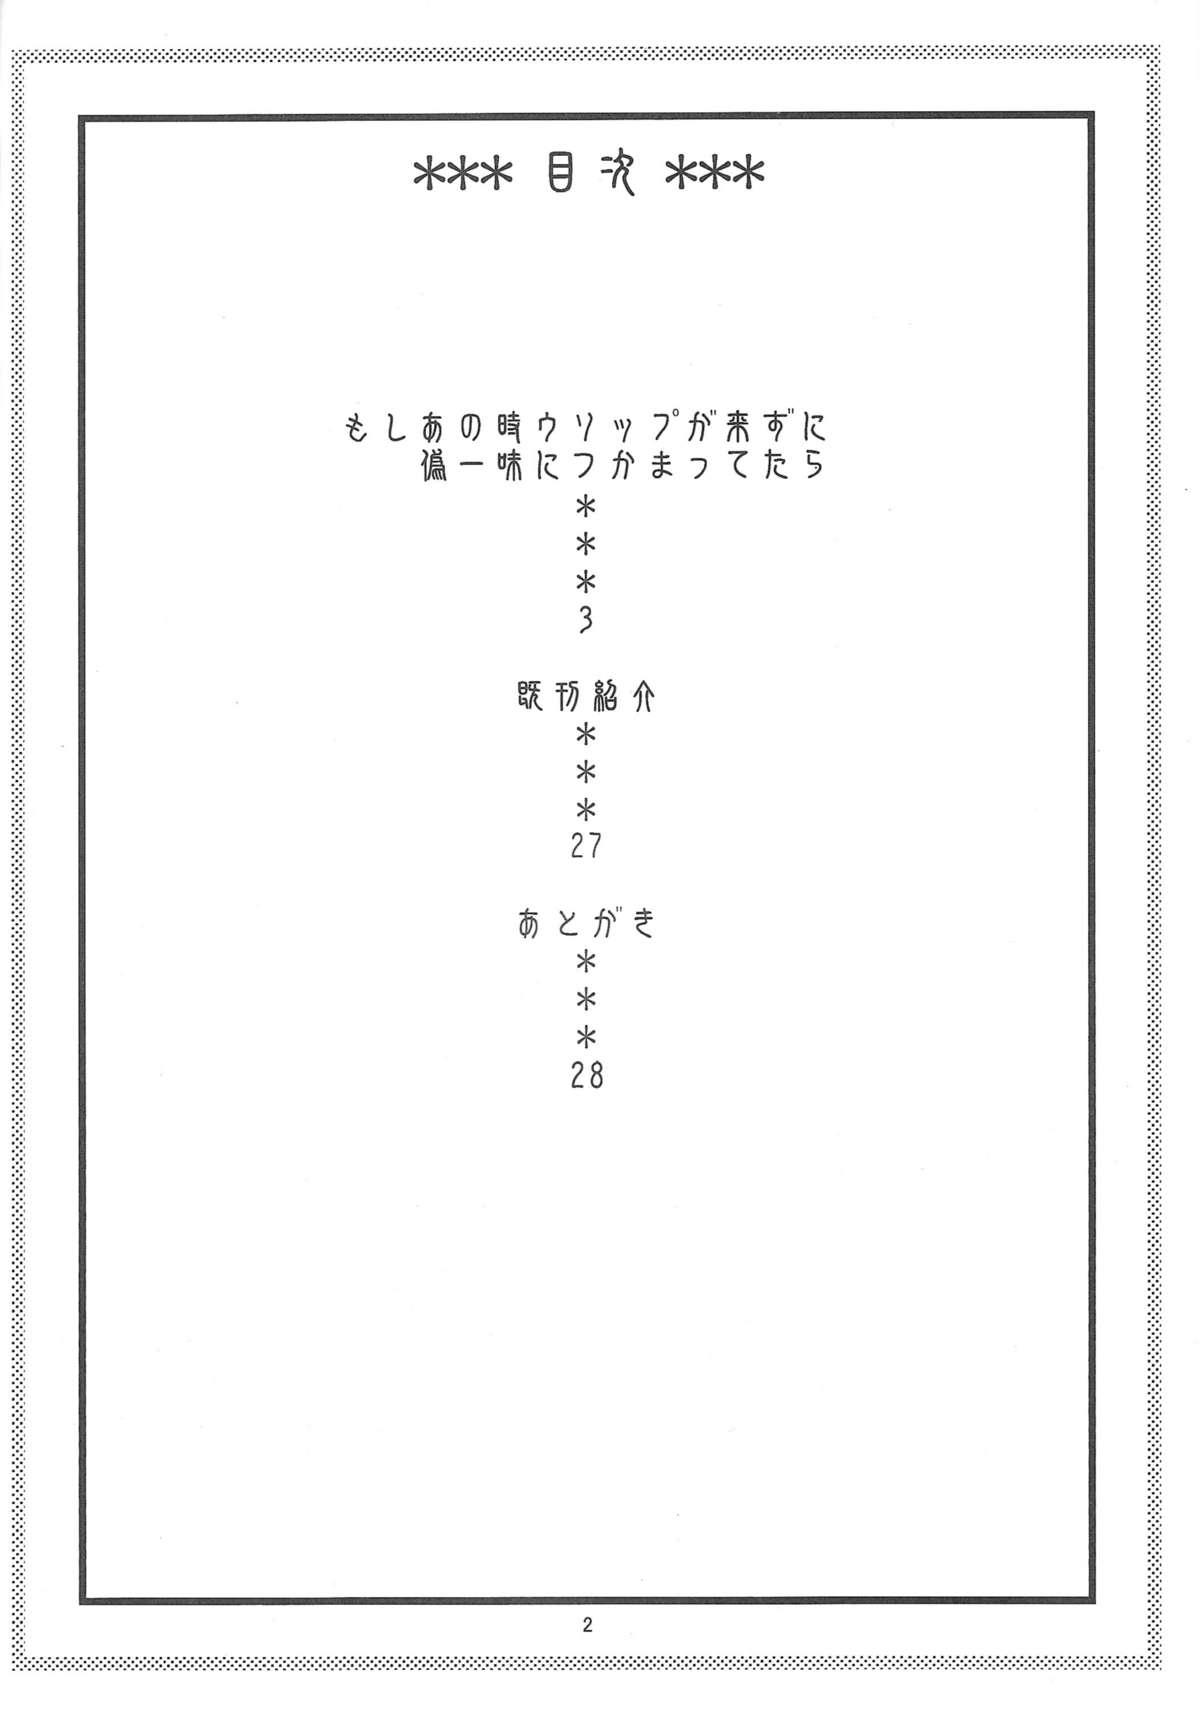 Legs Nami no Ura Koukai Nisshi 6 - One piece Stepmom - Page 3